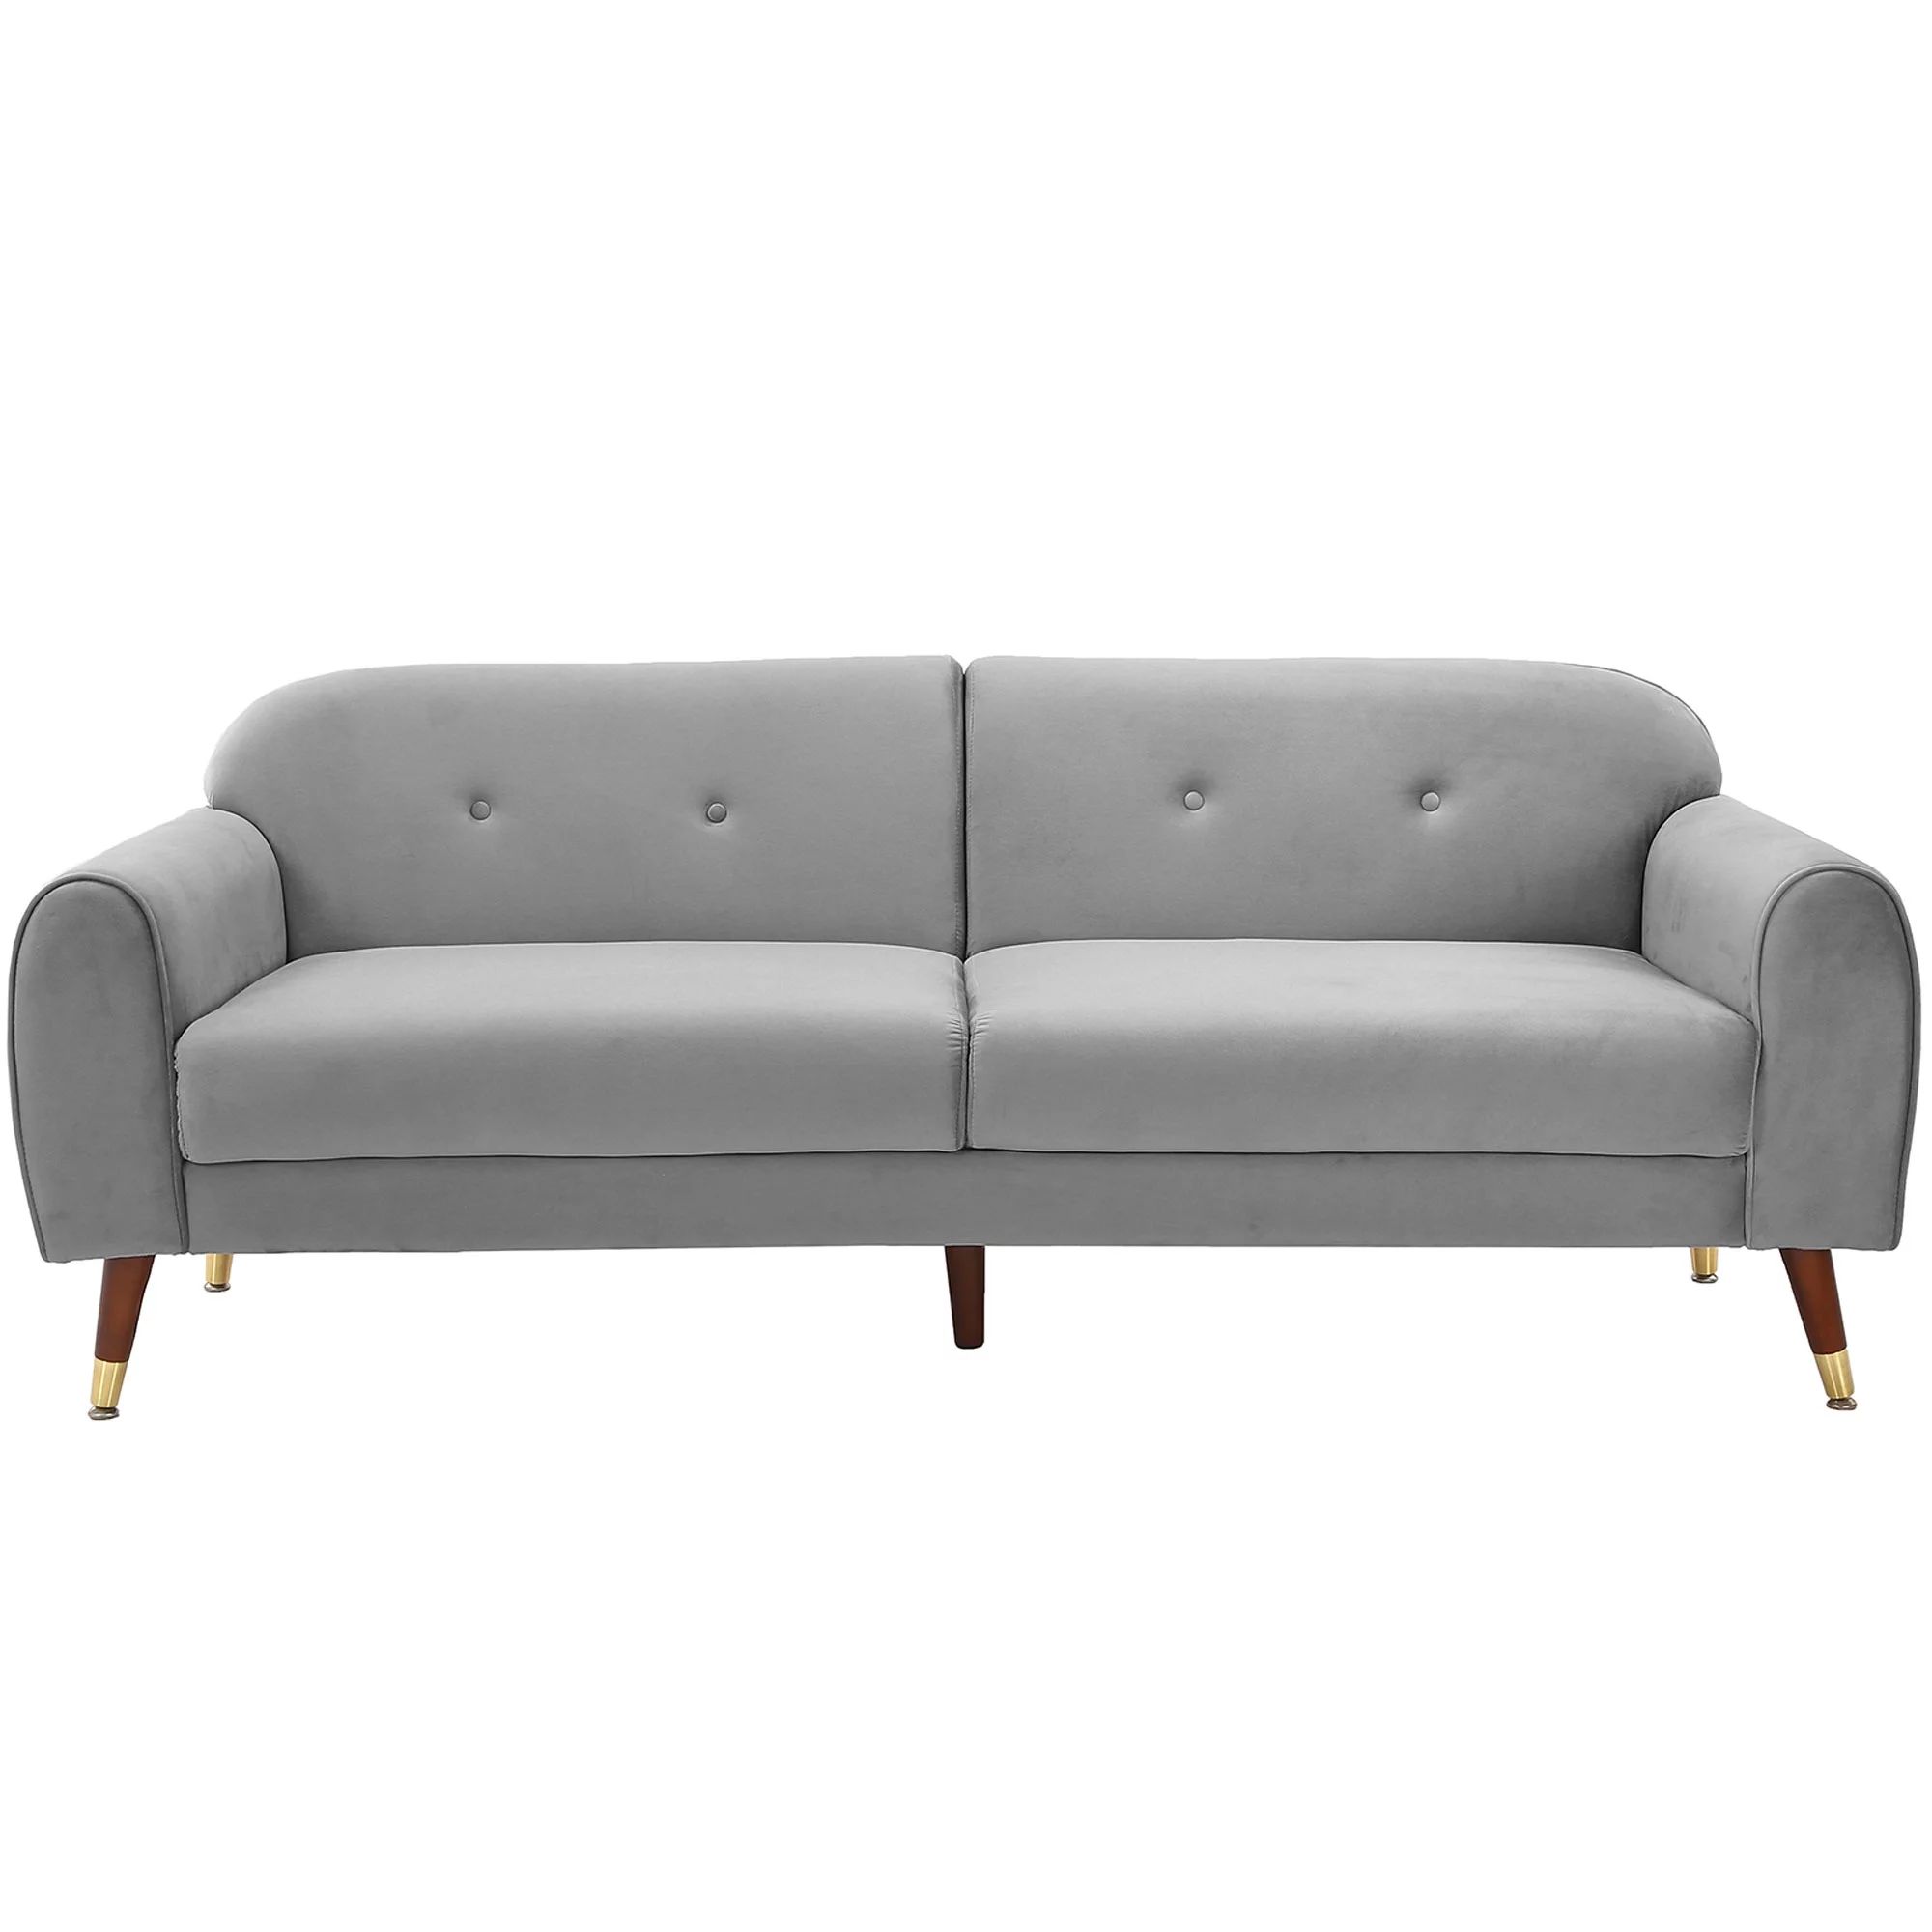 Modstyle Modern Velvet Sofa Couch for Living Room, Gray 75.5" | Walmart (US)